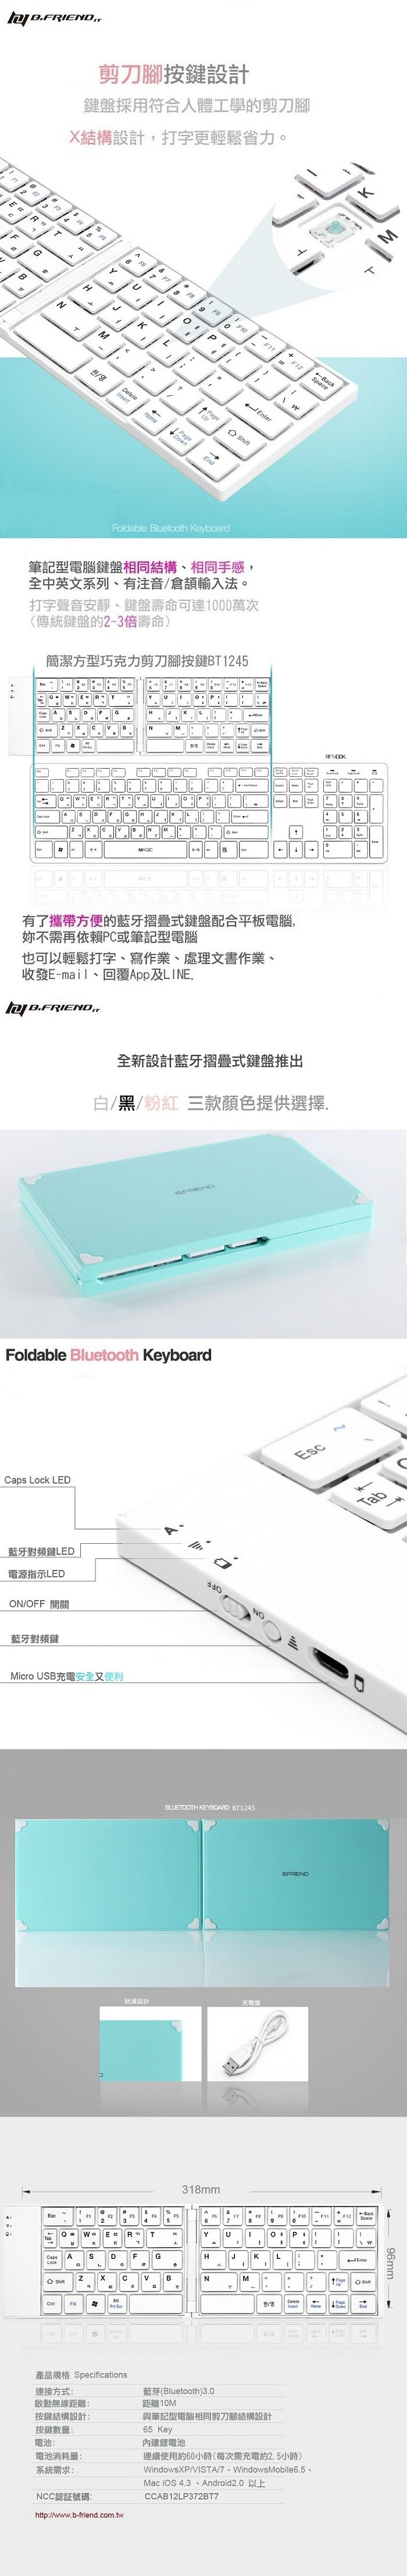 BT1245 摺疊藍牙鍵盤